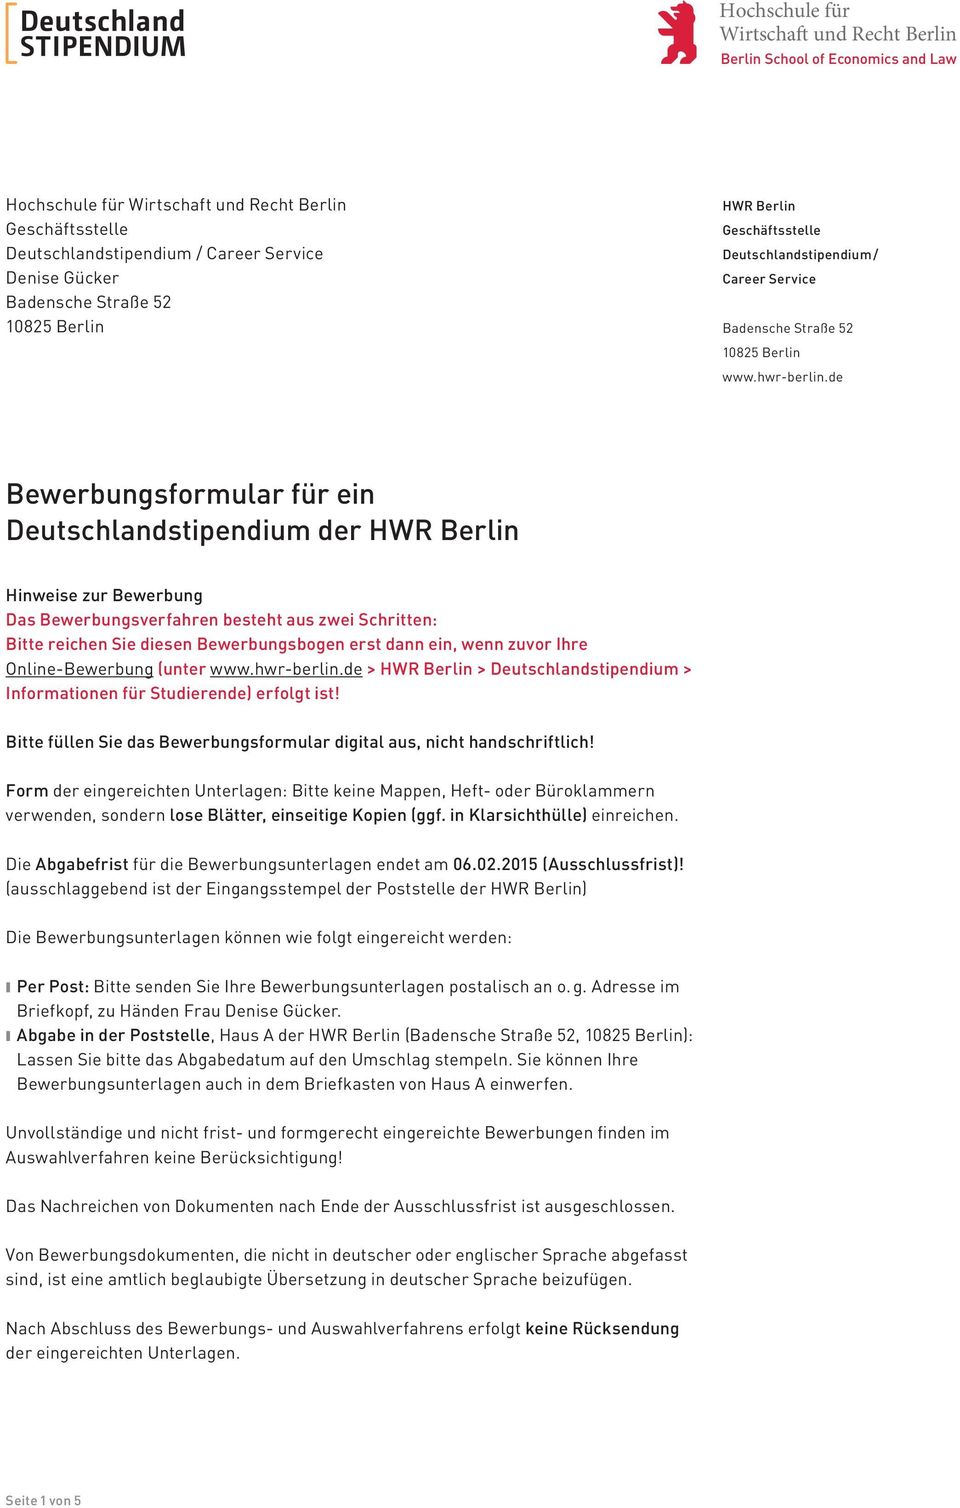 Bewerbungsformular Fur Ein Deutschlandstipendium Der Hwr Berlin Pdf Free Download